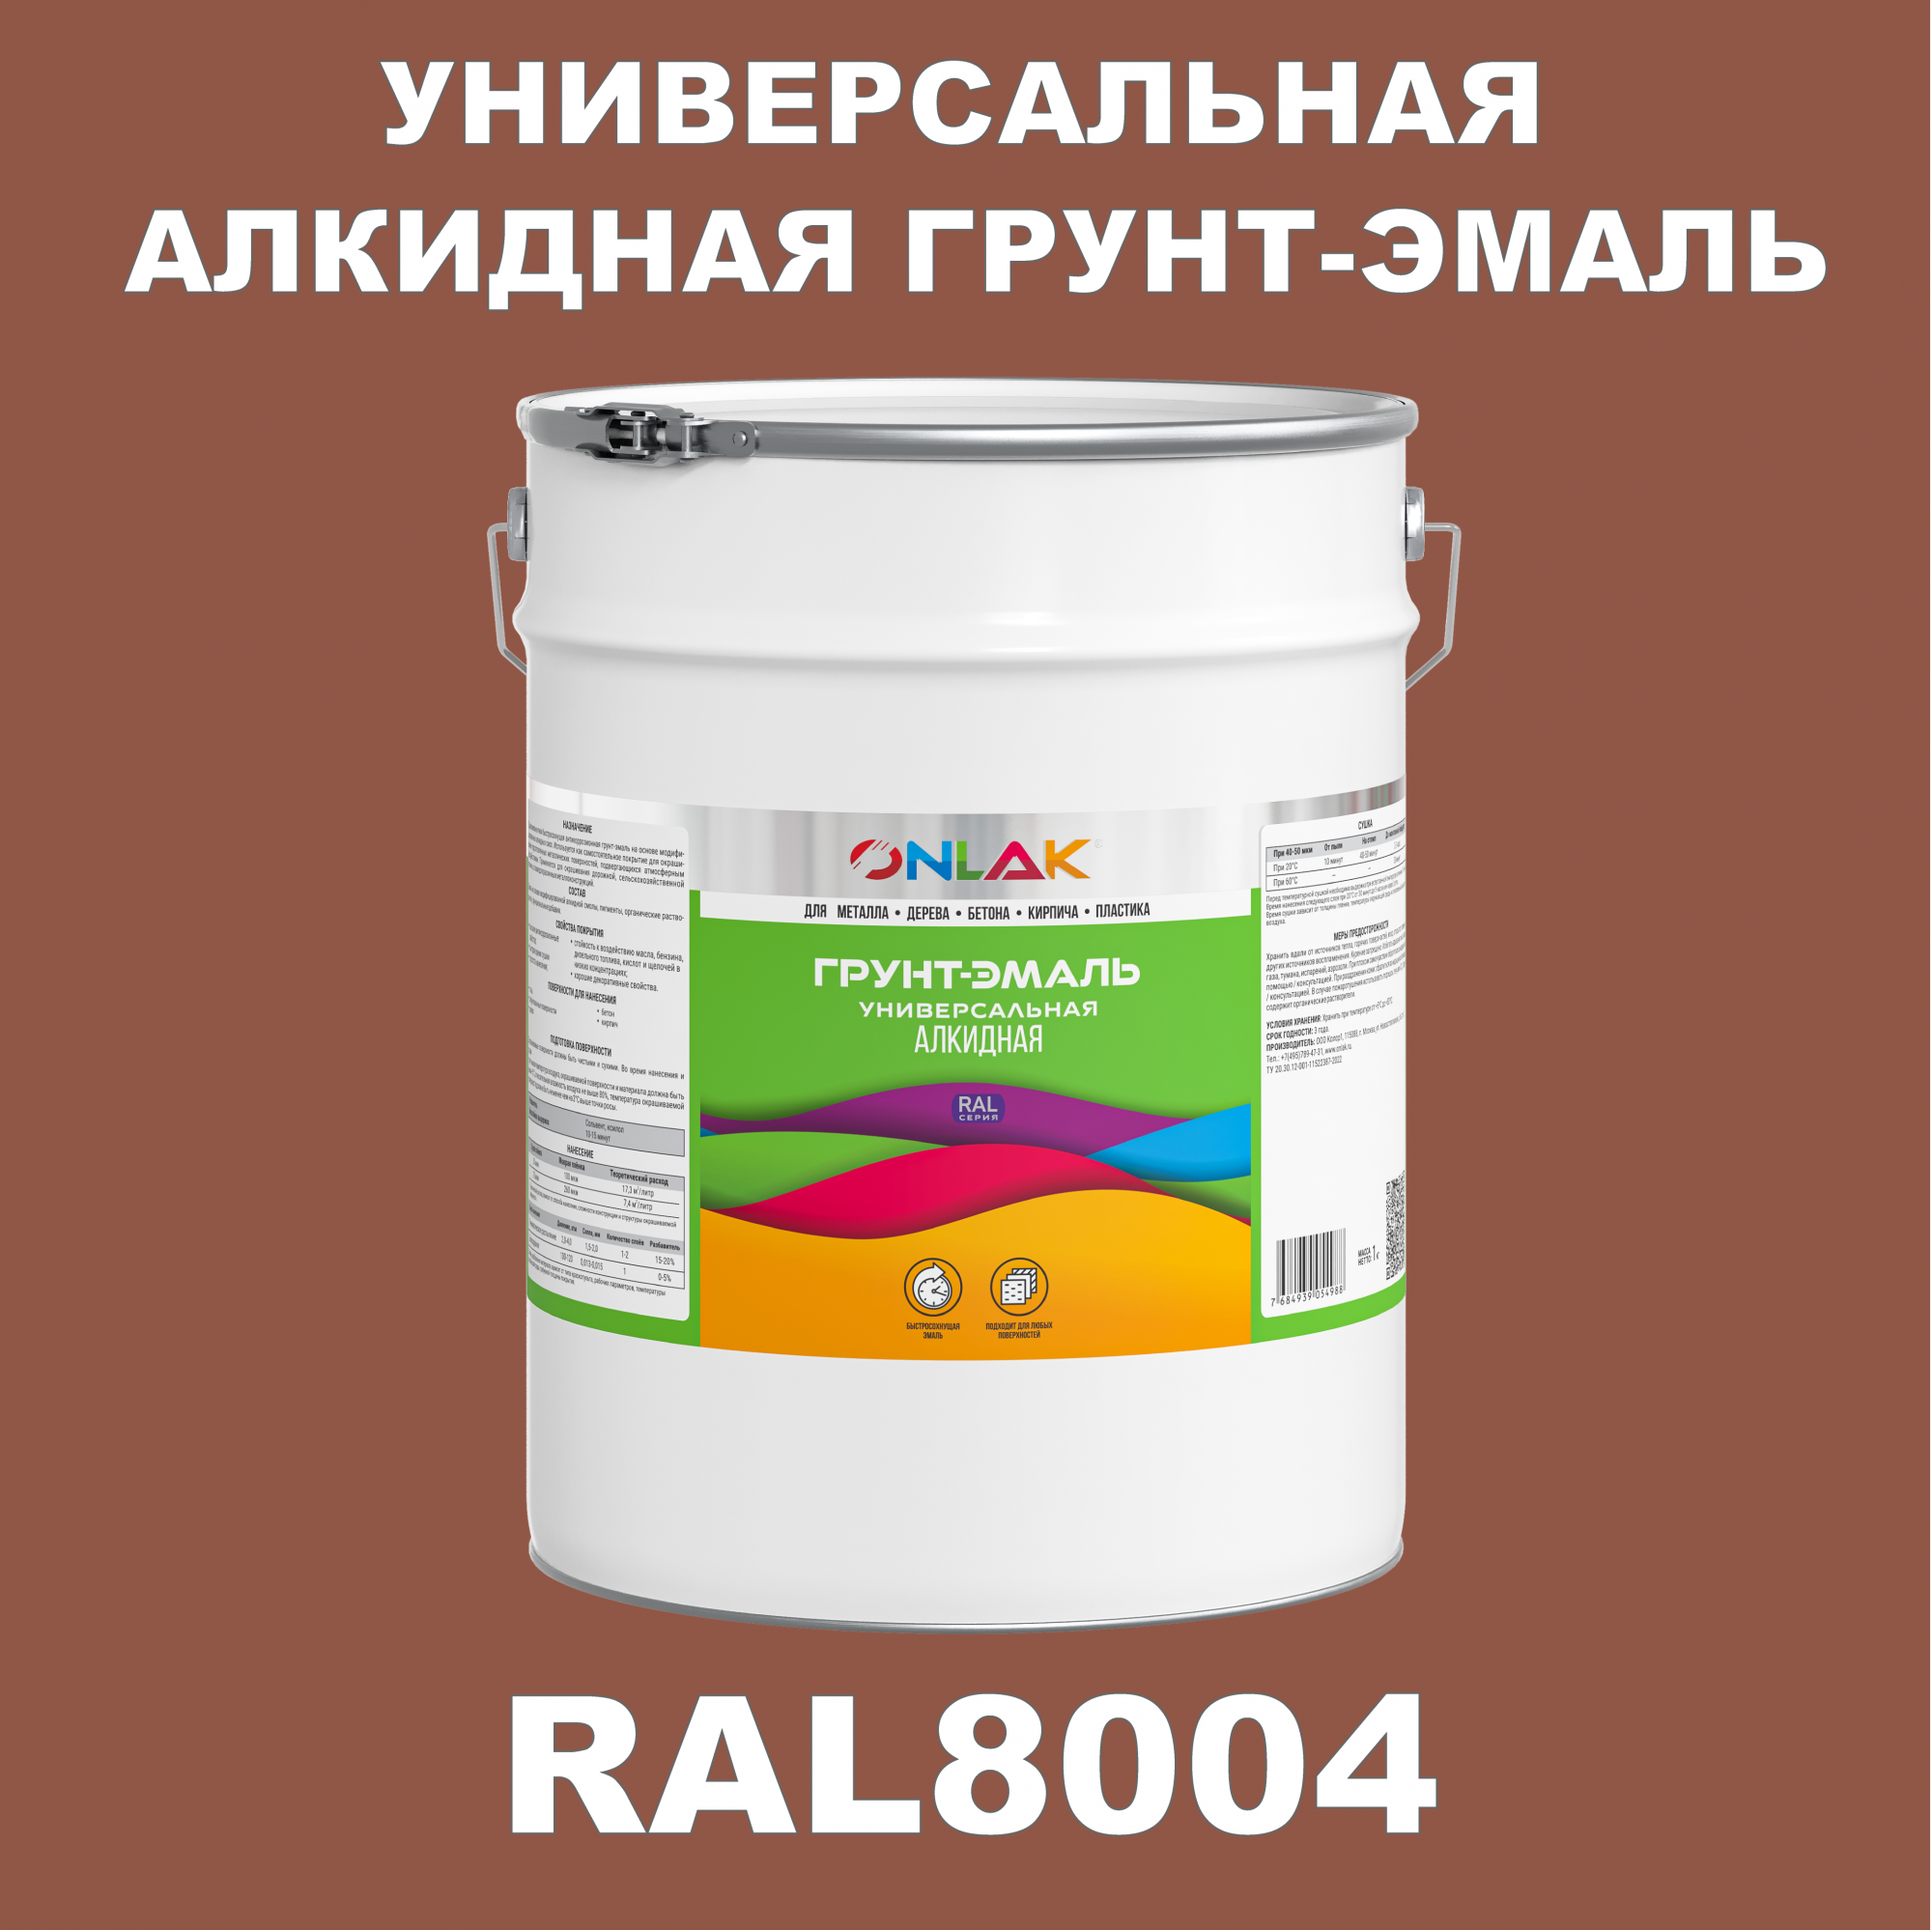 Грунт-эмаль ONLAK 1К RAL8004 антикоррозионная алкидная по металлу по ржавчине 20 кг грунт эмаль neomid по ржавчине быстросохнущая алкидная серая 0 9 кг